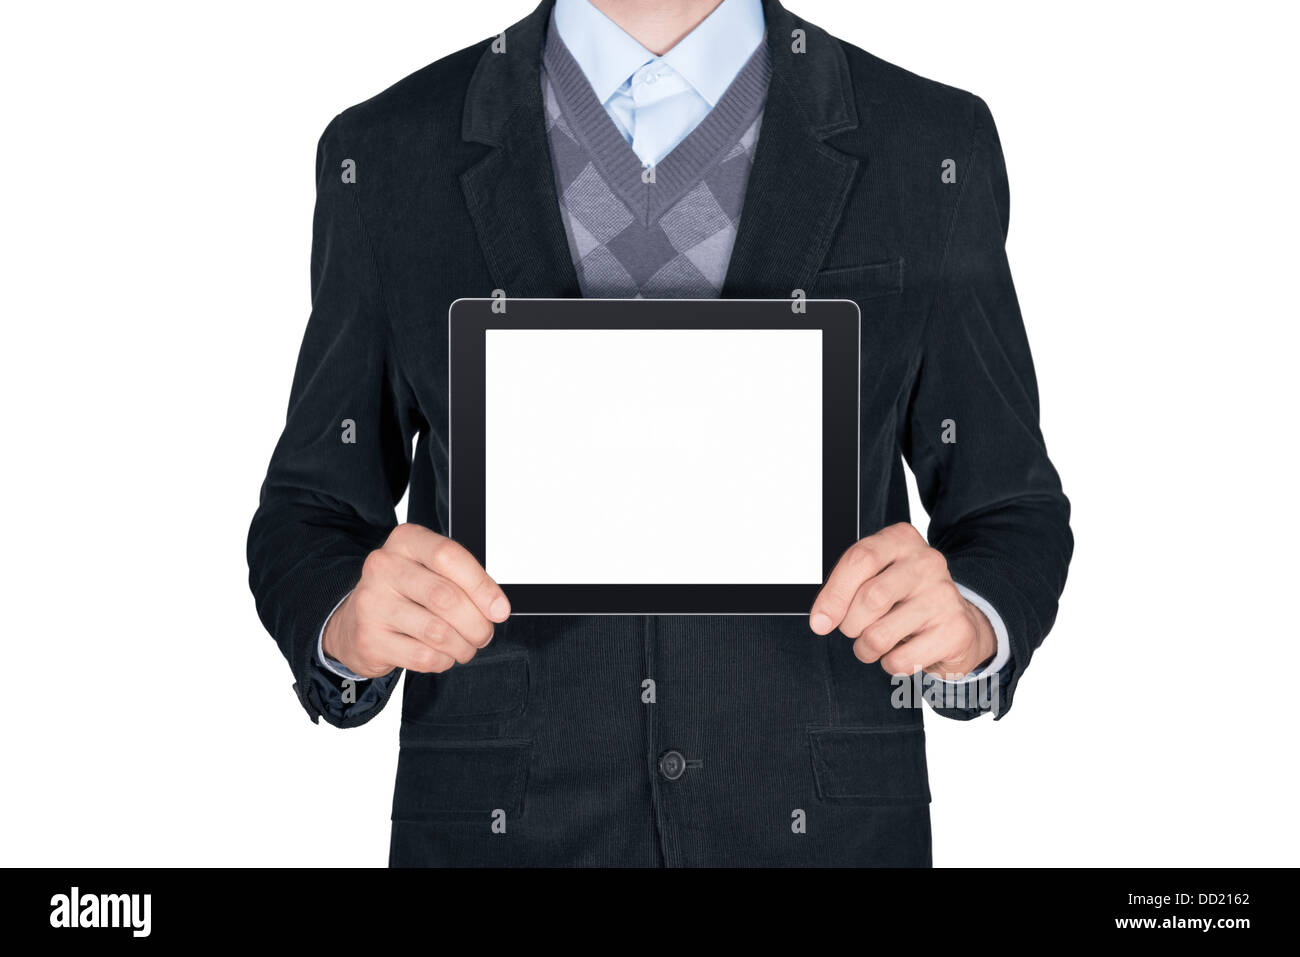 Jeune homme en costume noir montrant avec tablette numérique moderne écran vide. Isolé sur fond blanc Banque D'Images